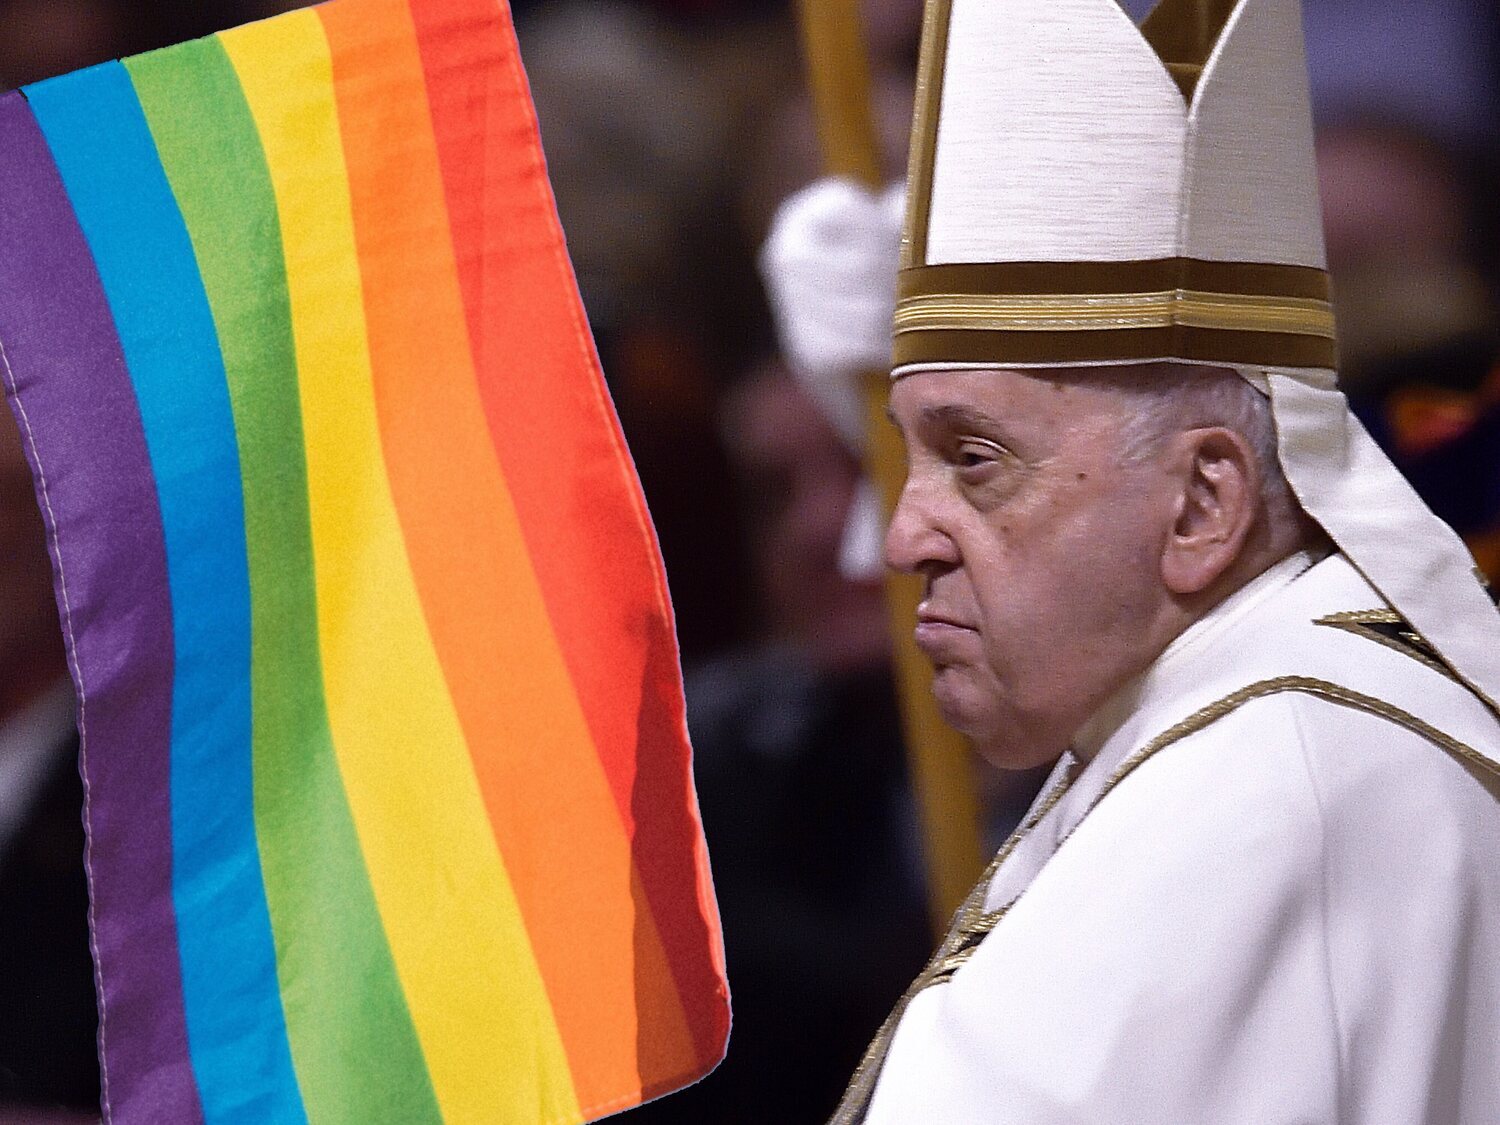 El Vaticano matiza que no da el "visto bueno" a las parejas homosexuales: "No es moralmente aceptable"